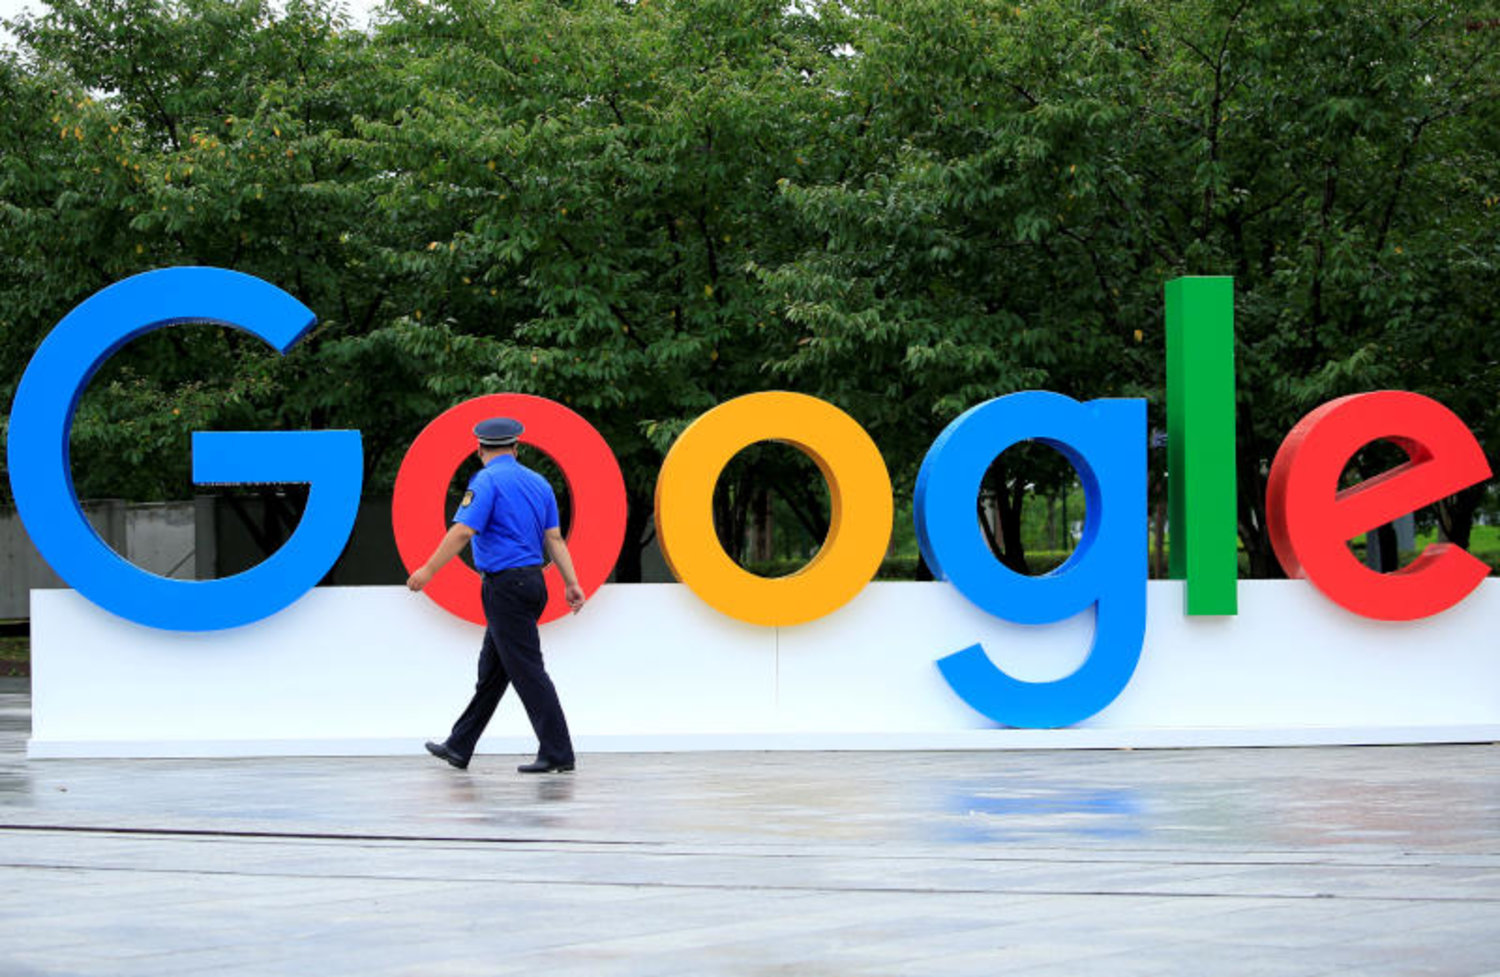 جوجل تفصل عشرات الموظفين من يوتيوب في إطار إعادة الهيكلة